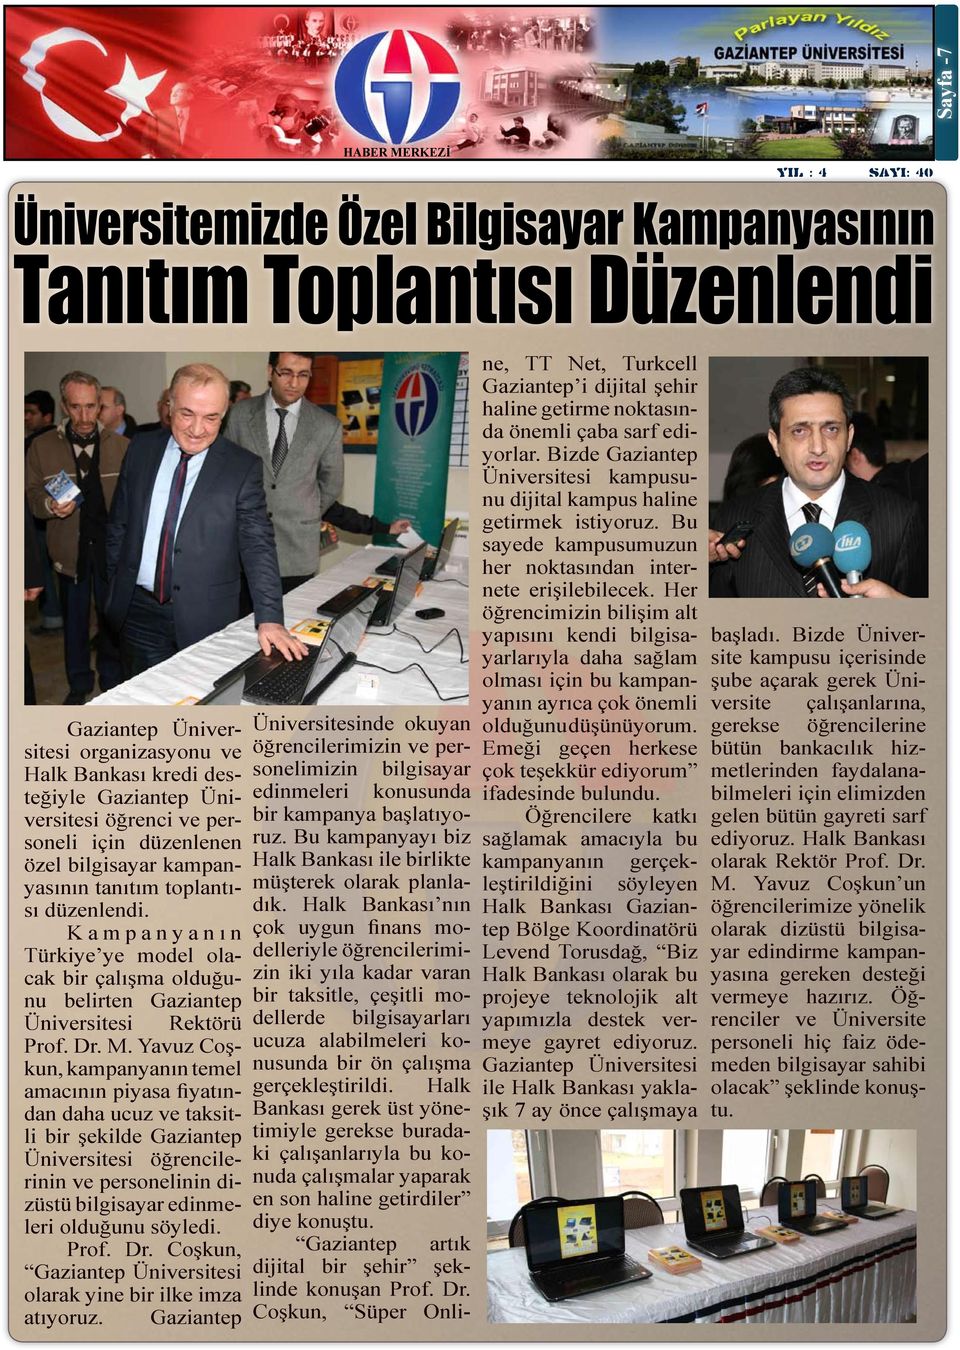 Yavuz Coşkun, kampanyanın temel amacının piyasa fiyatından daha ucuz ve taksitli bir şekilde Gaziantep Üniversitesi öğrencilerinin ve personelinin dizüstü bilgisayar edinmeleri olduğunu söyledi. Prof.